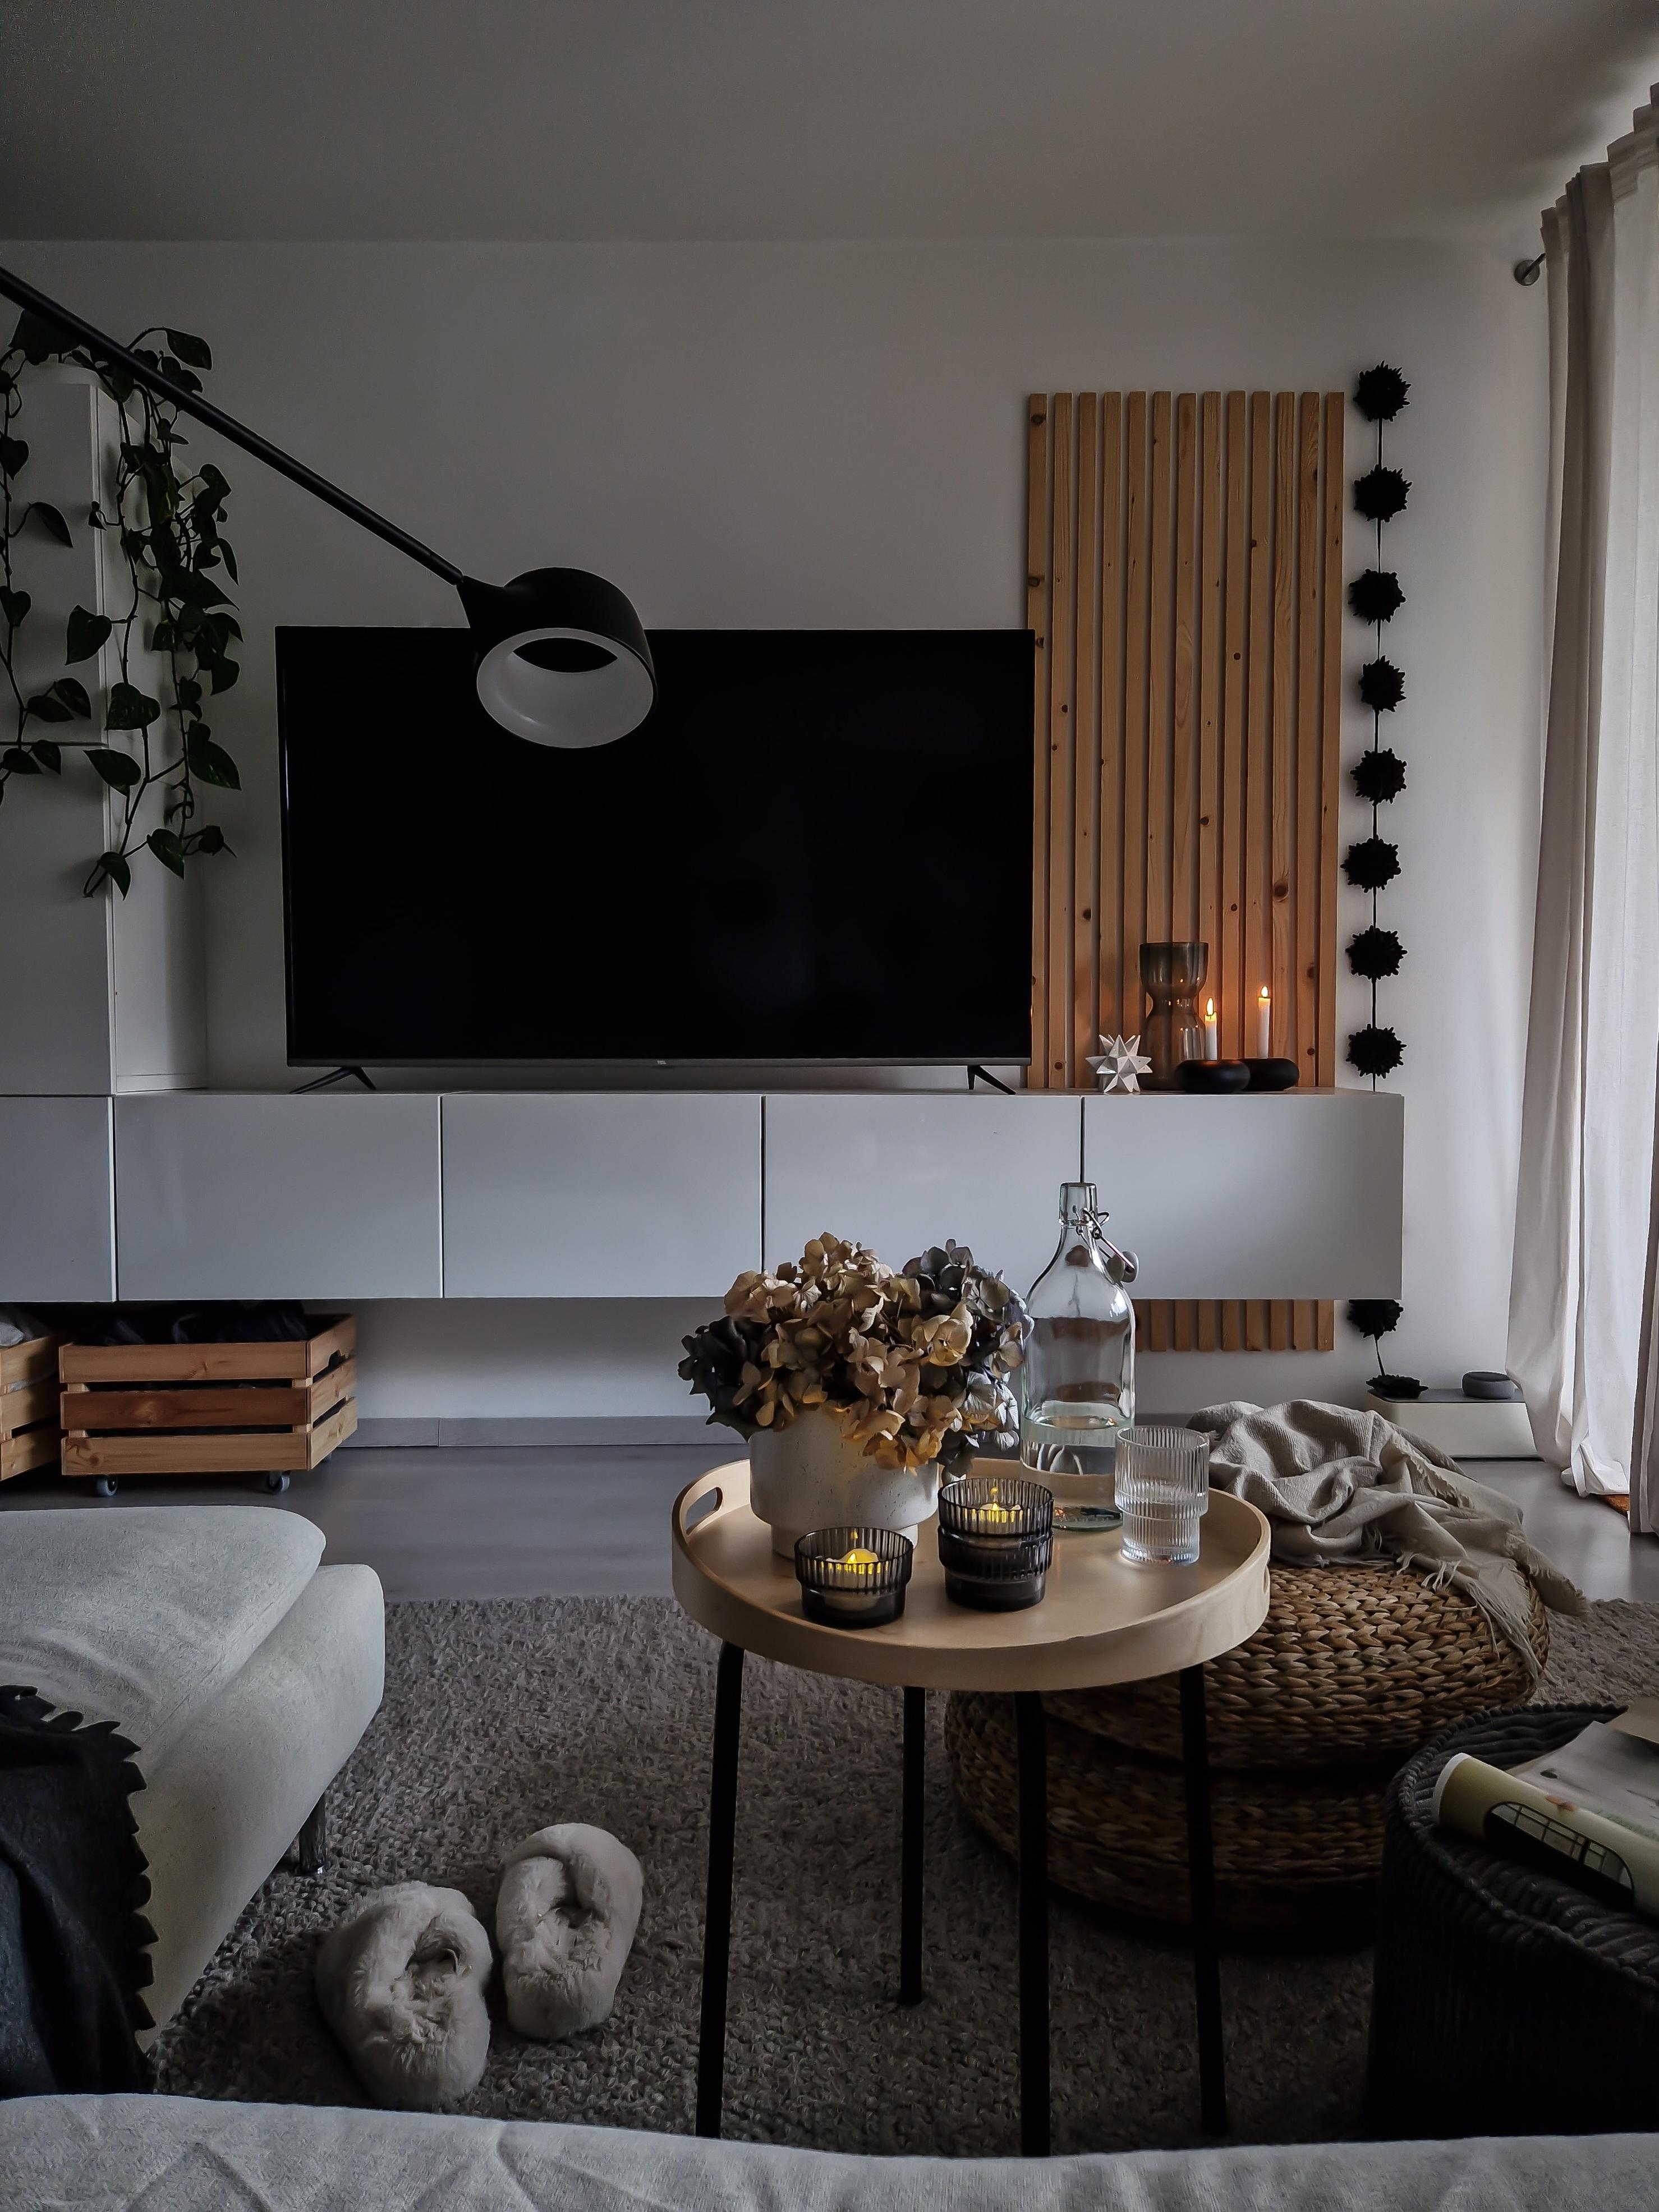 ✨️ evening 🌙
#wohnzimmer #livingroom #cozyness #gemütlichkeit #kerzen #kerzenschein #kerzenlicht #candlelight 